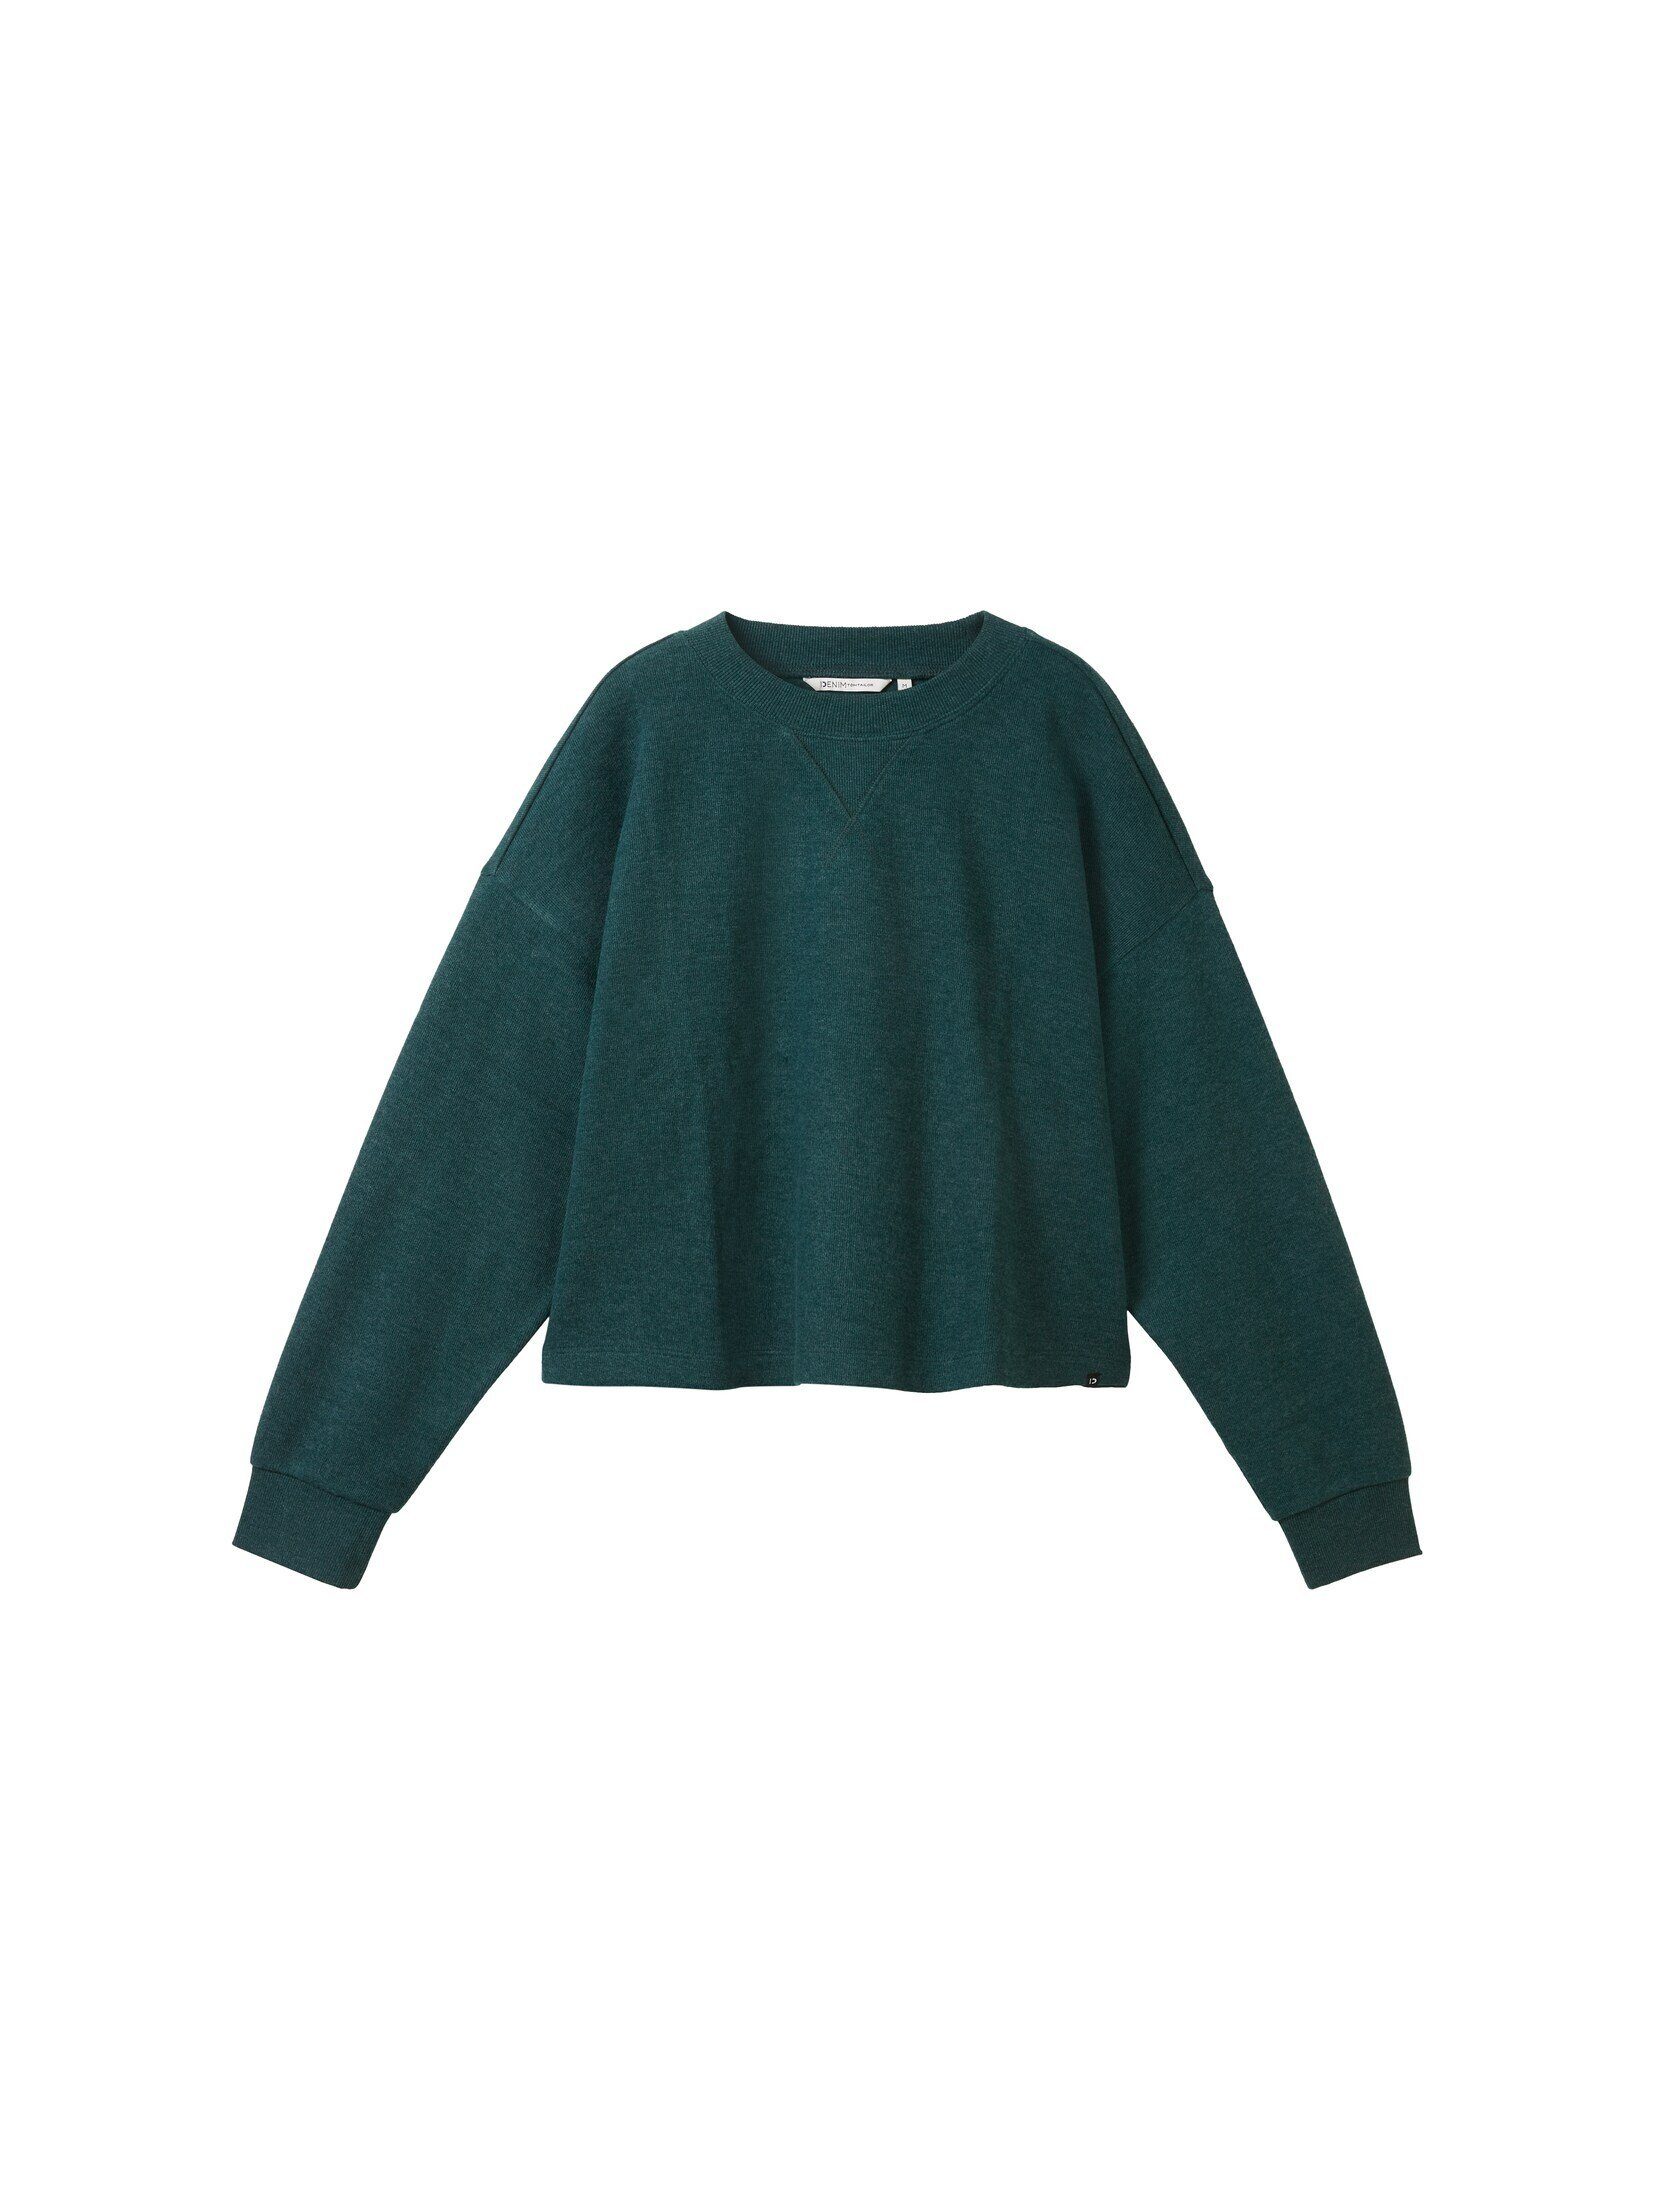 TOM TAILOR Denim Forest Sweatshirt mit Midnight Green Mélange Rundhalsausschnitt Sweatshirt Cropped